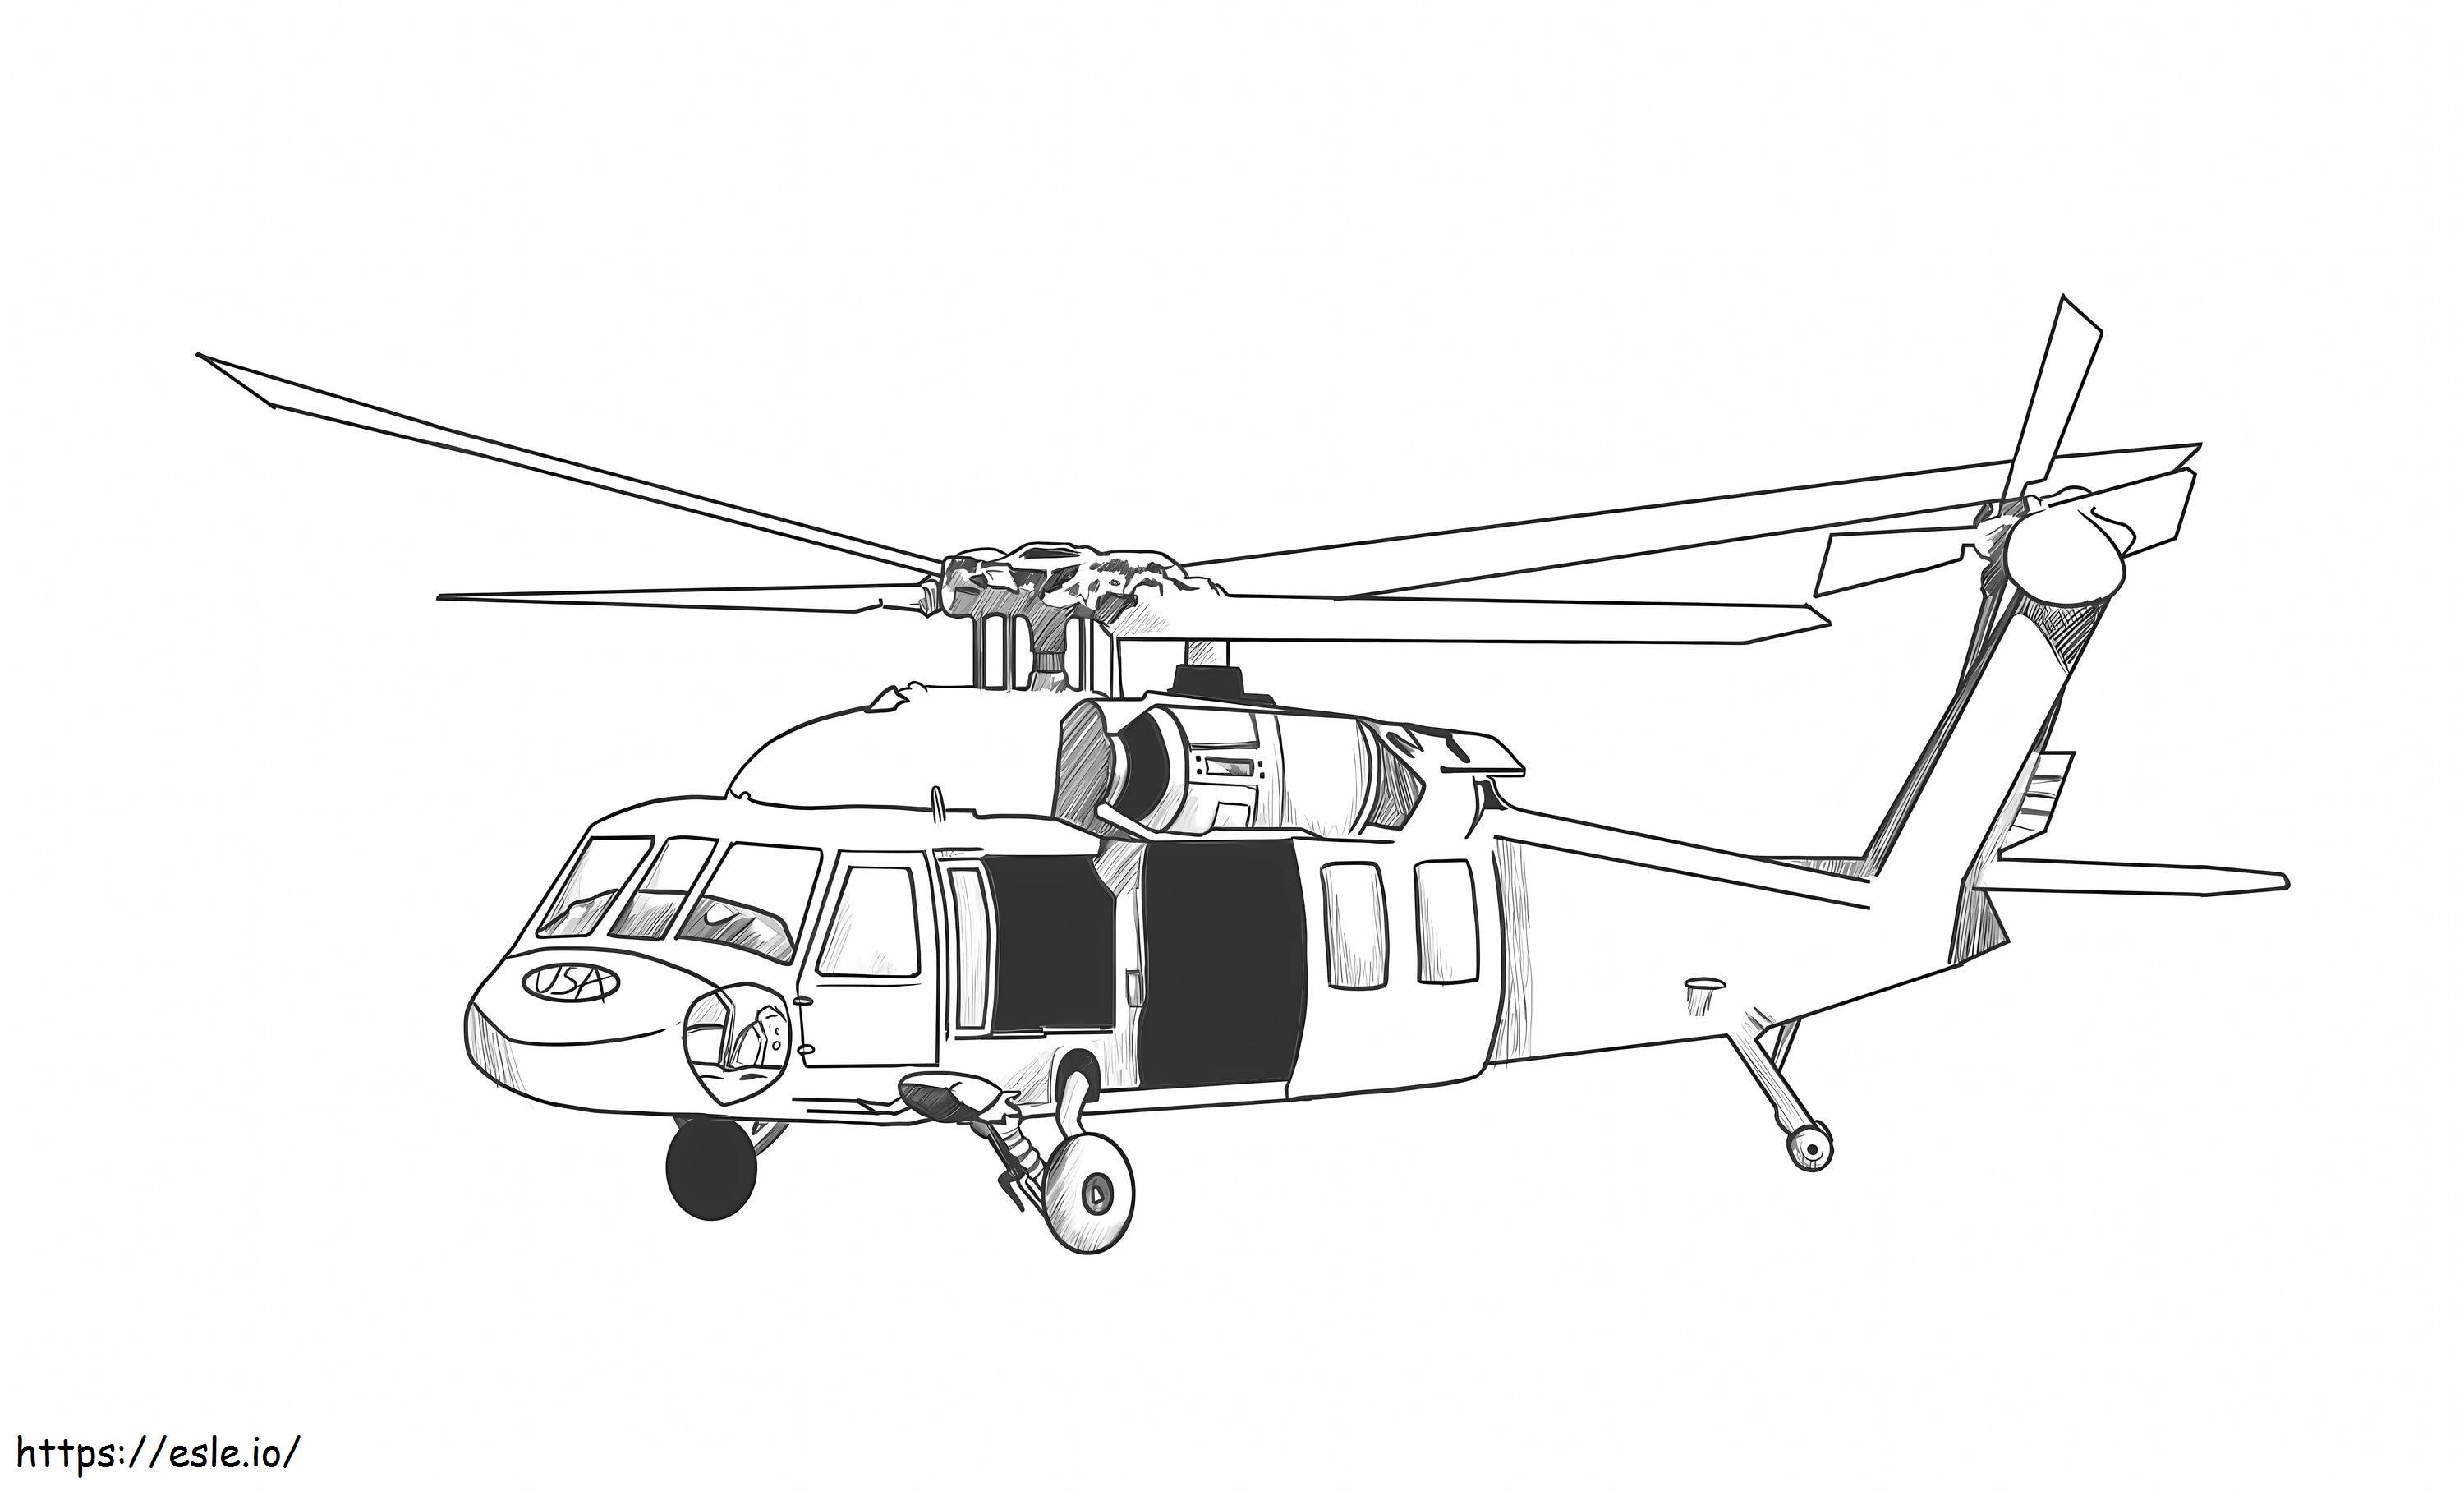 Helikopter do wydrukowania kolorowanka